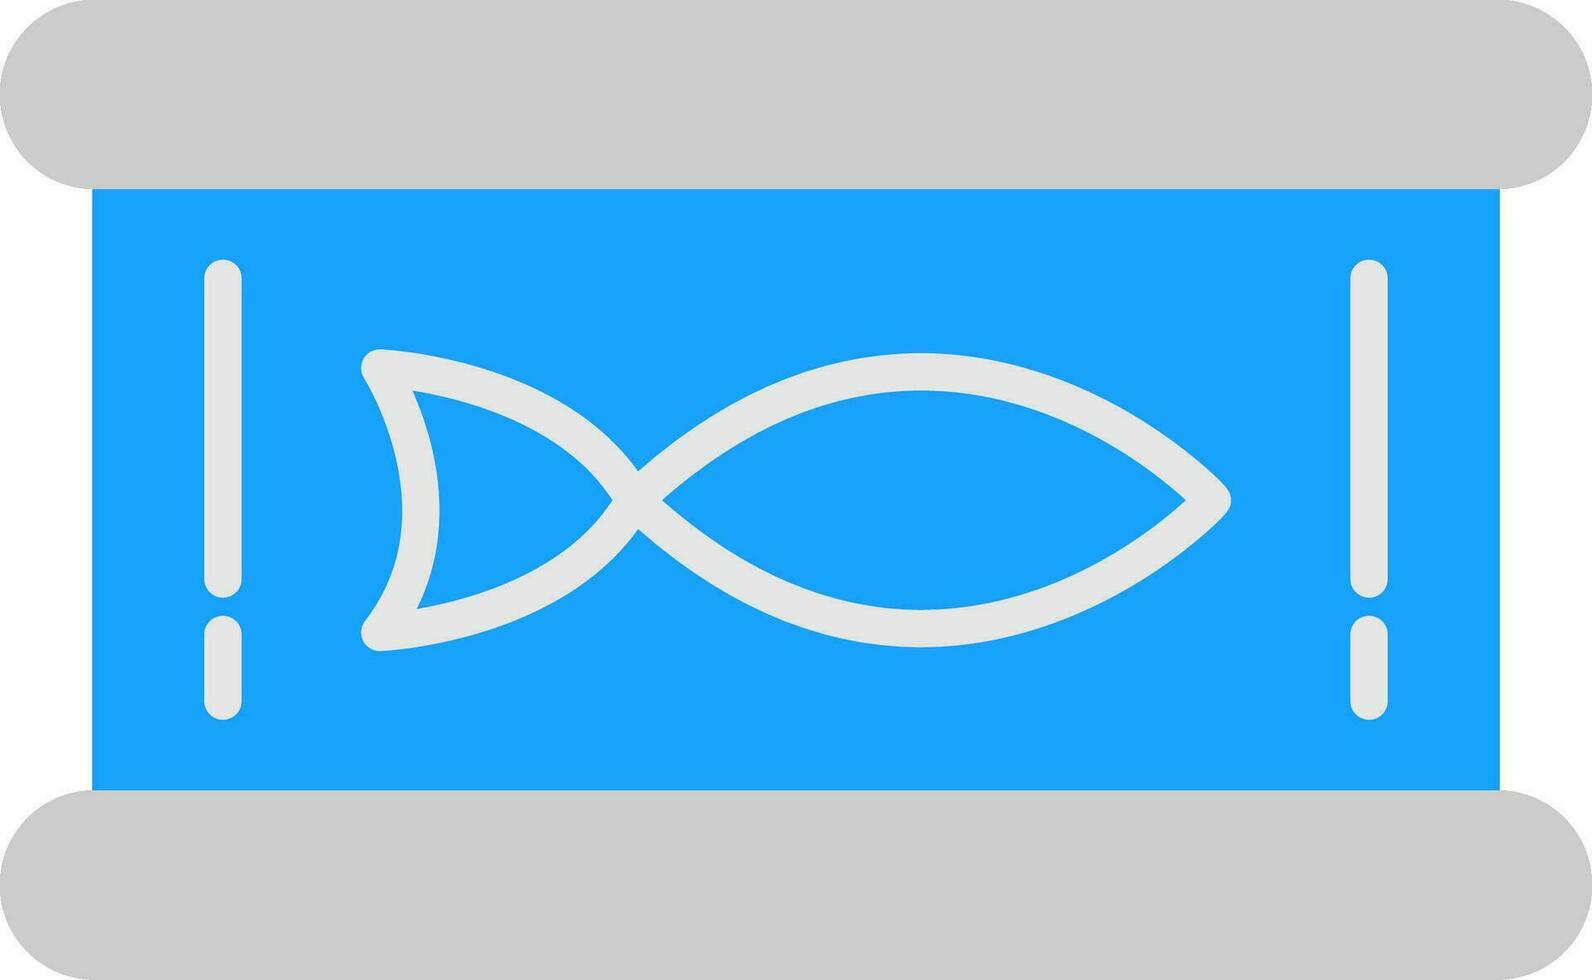 Tuna Flat Icon vector